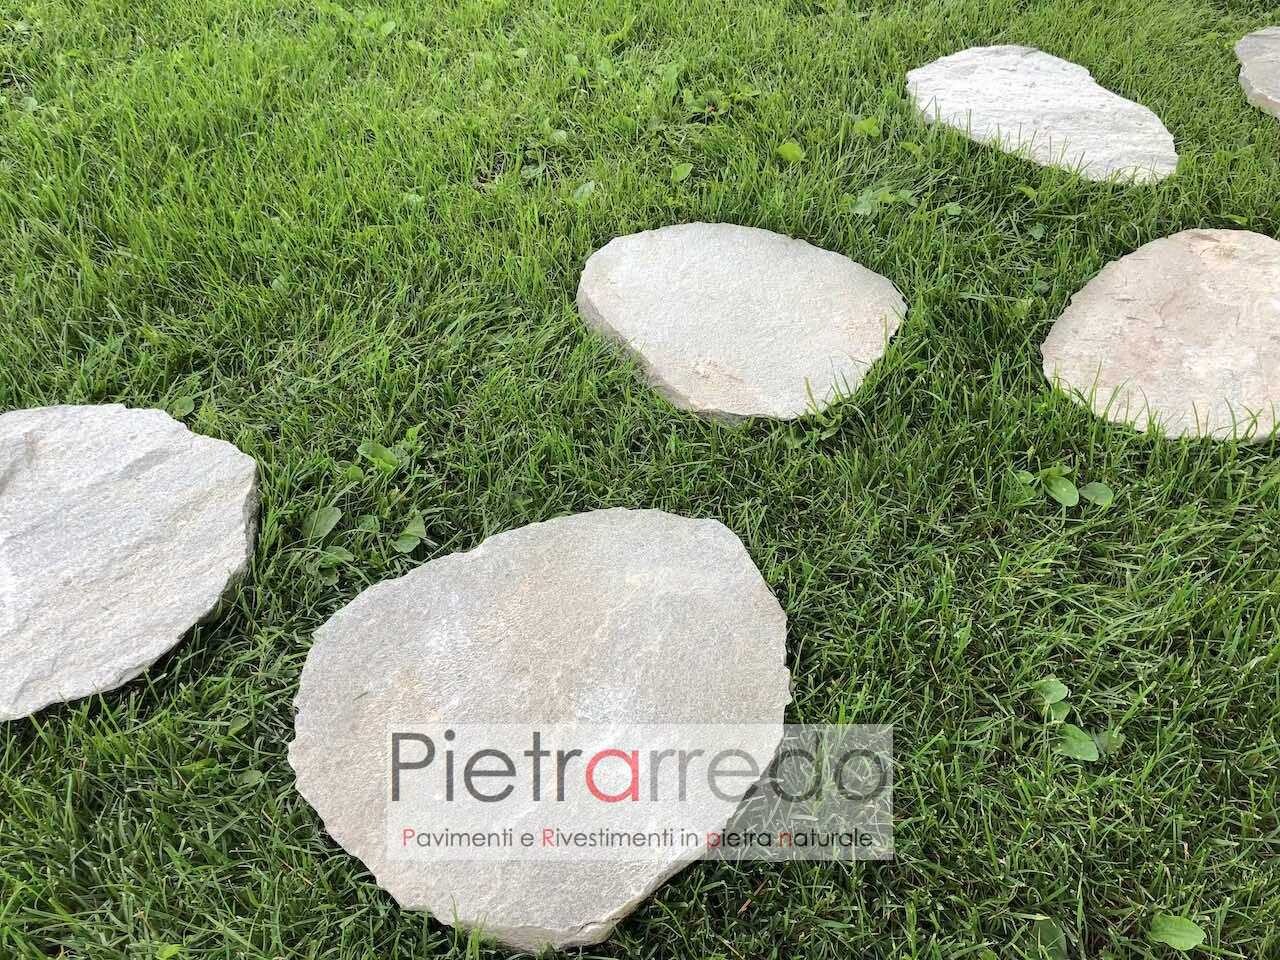 camminamenti giardino con passi giapponesi stone garden pietra sasso camminare prato pietrarredo prezzo milano